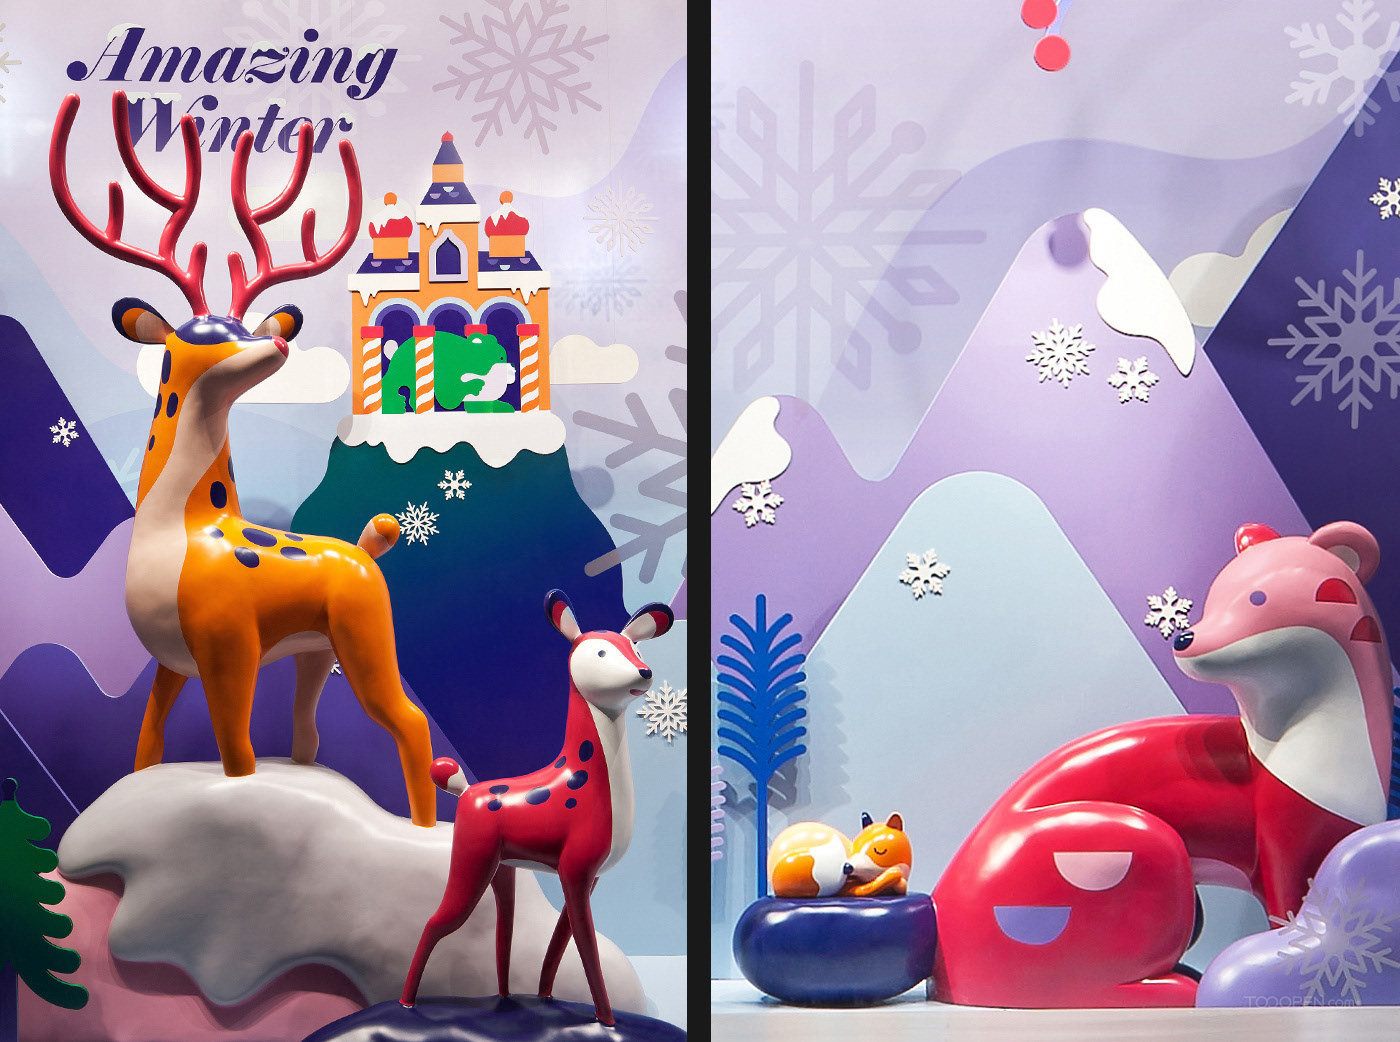 乐天购物中心2016年冬季活动展示设计图片-07